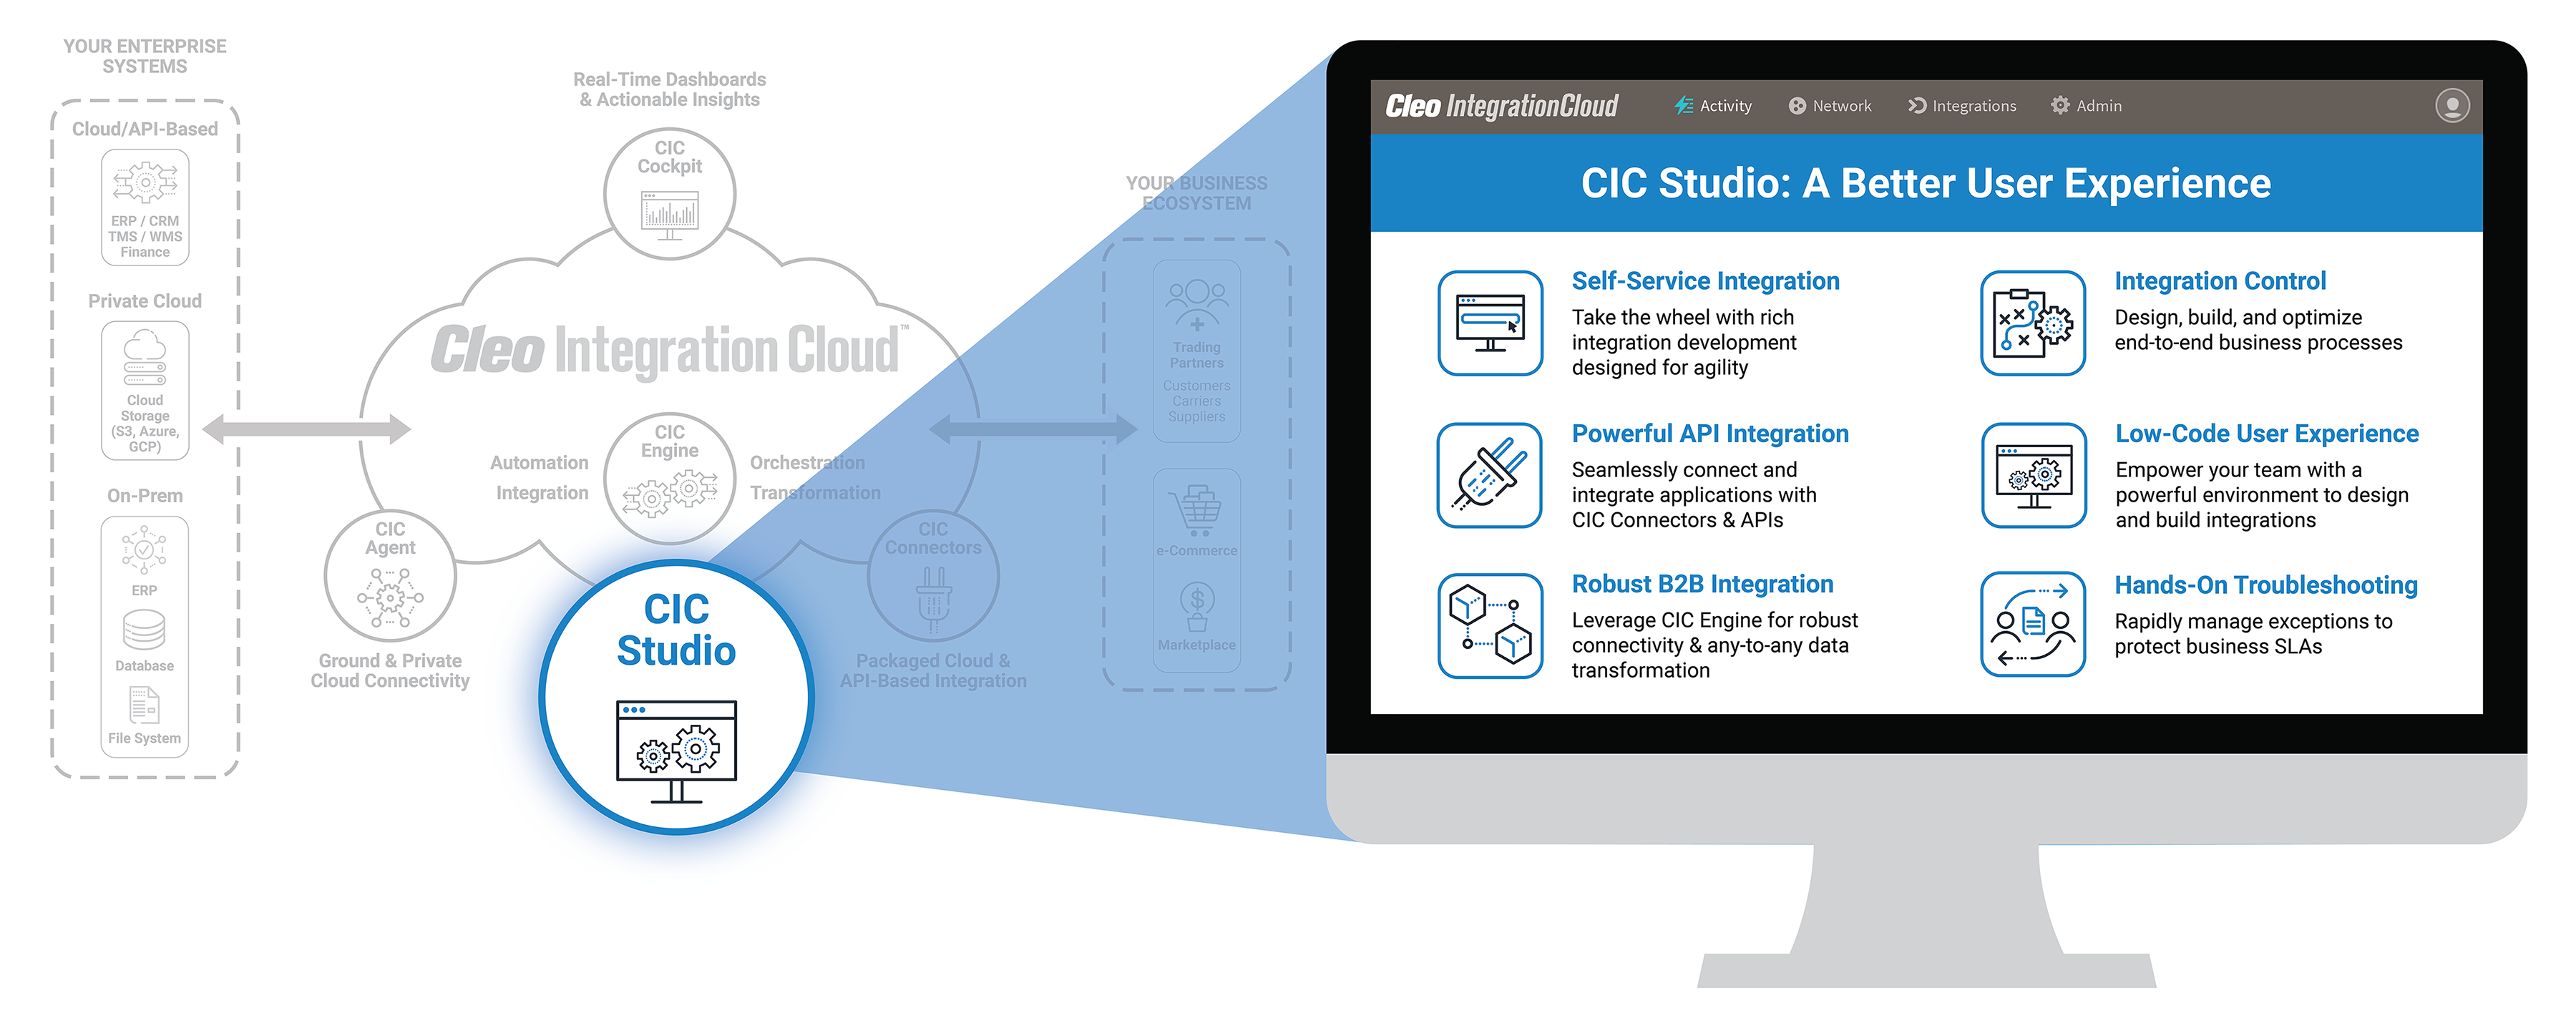 CIC Studio Infographic